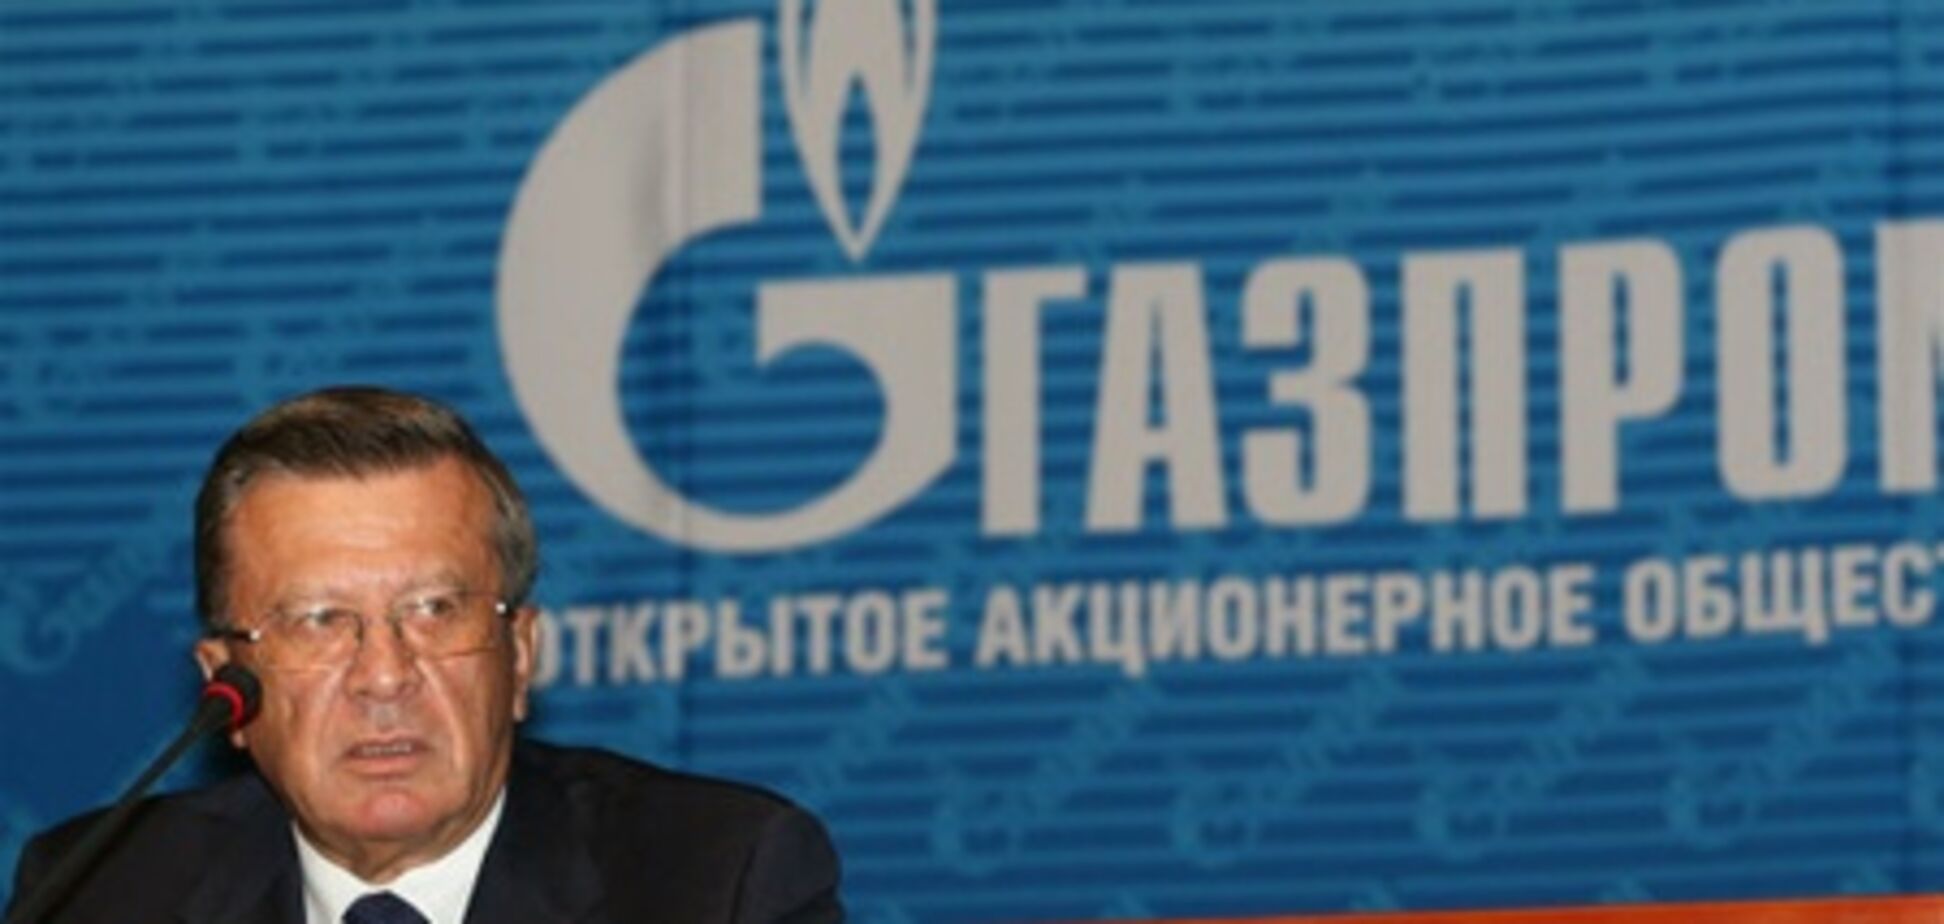 Председатель совета директоров 'Газпрома' сохранил свой пост